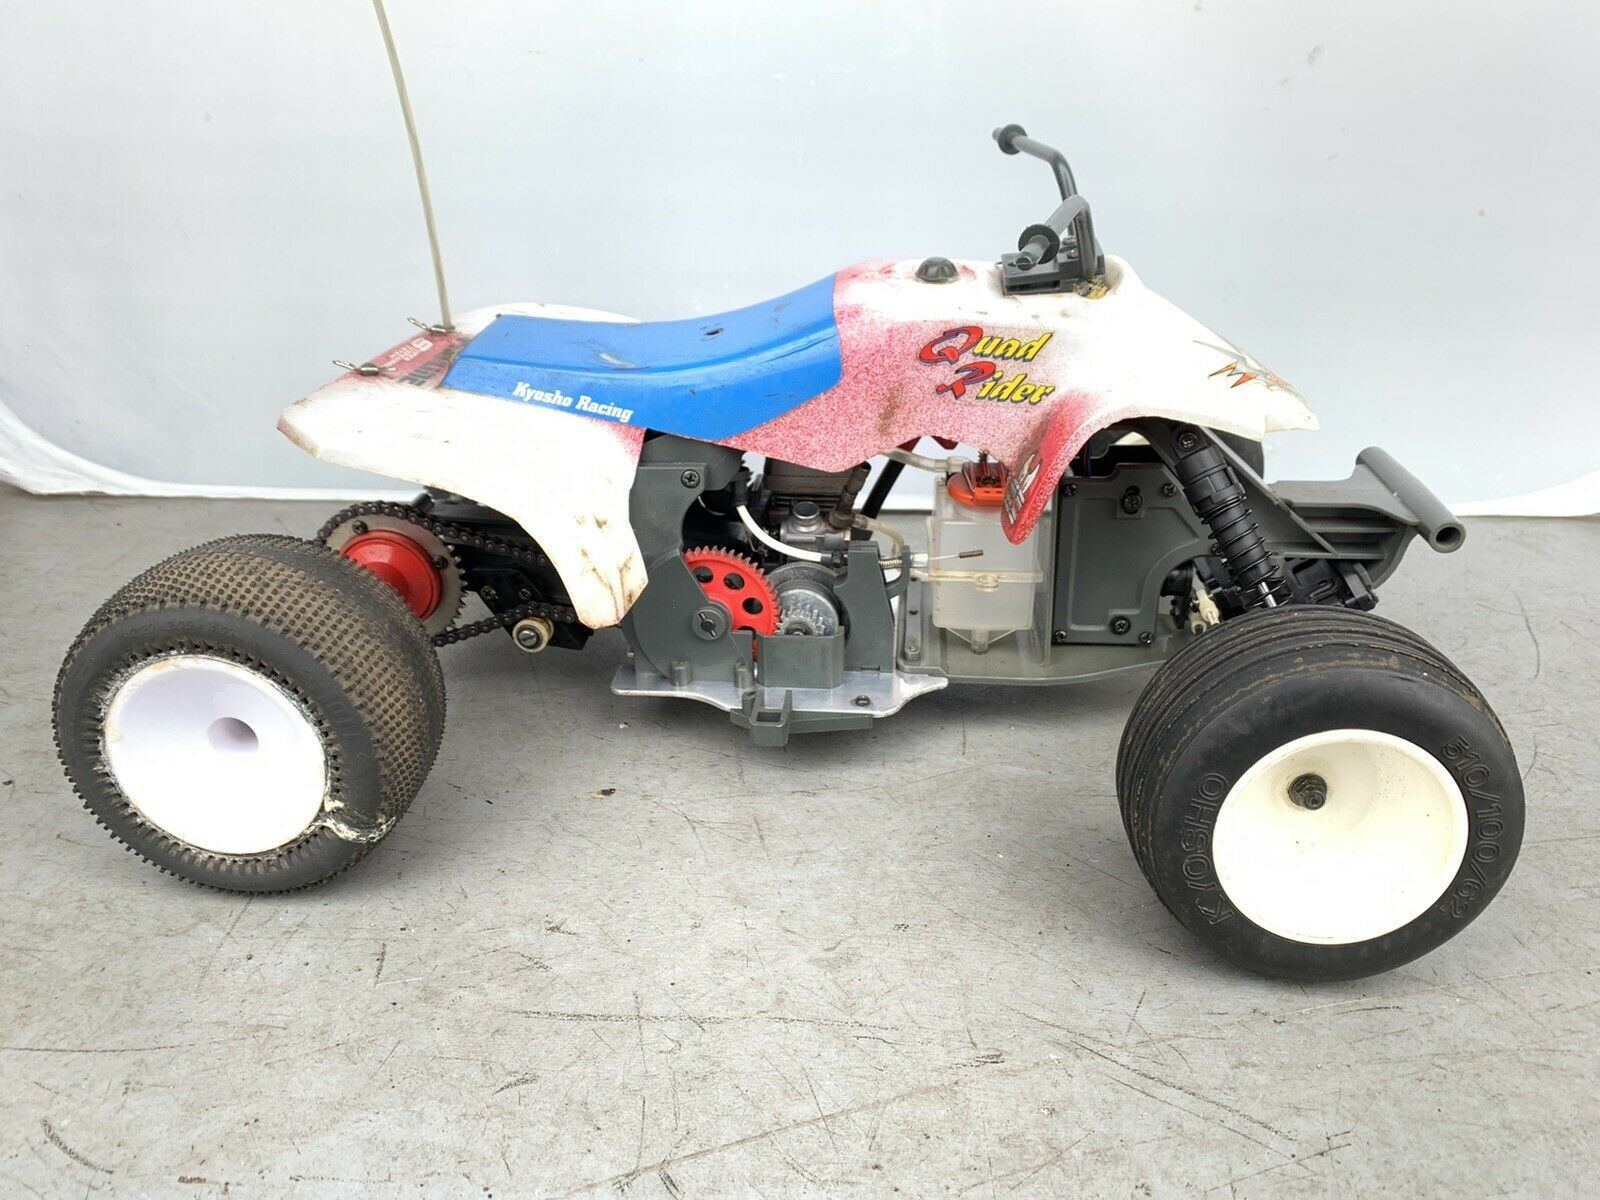 KYOSHO AT14 Rear Shaft ATV Quad Rider 